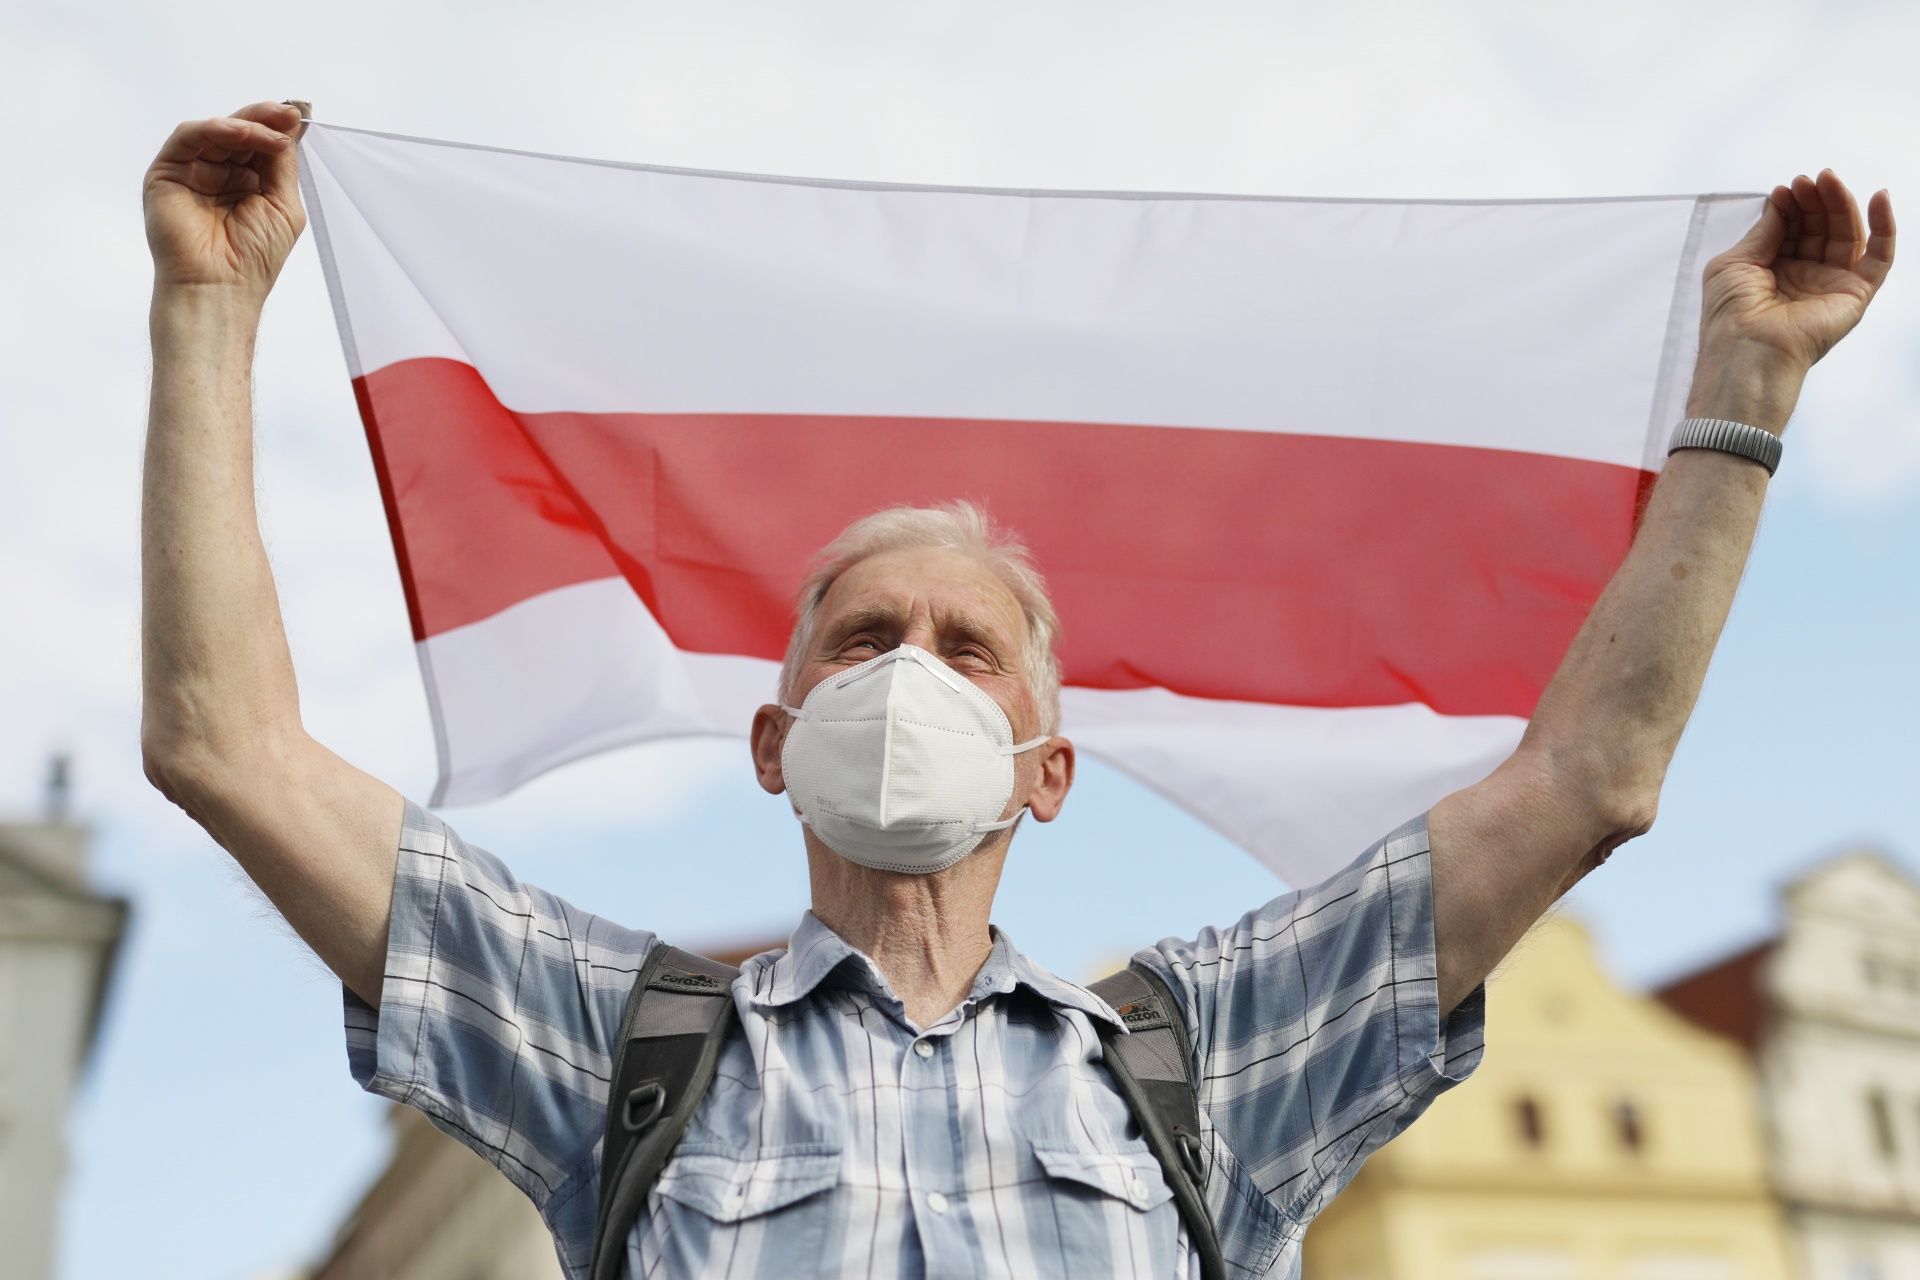 cichanouská bělorusko demonstrace v praze